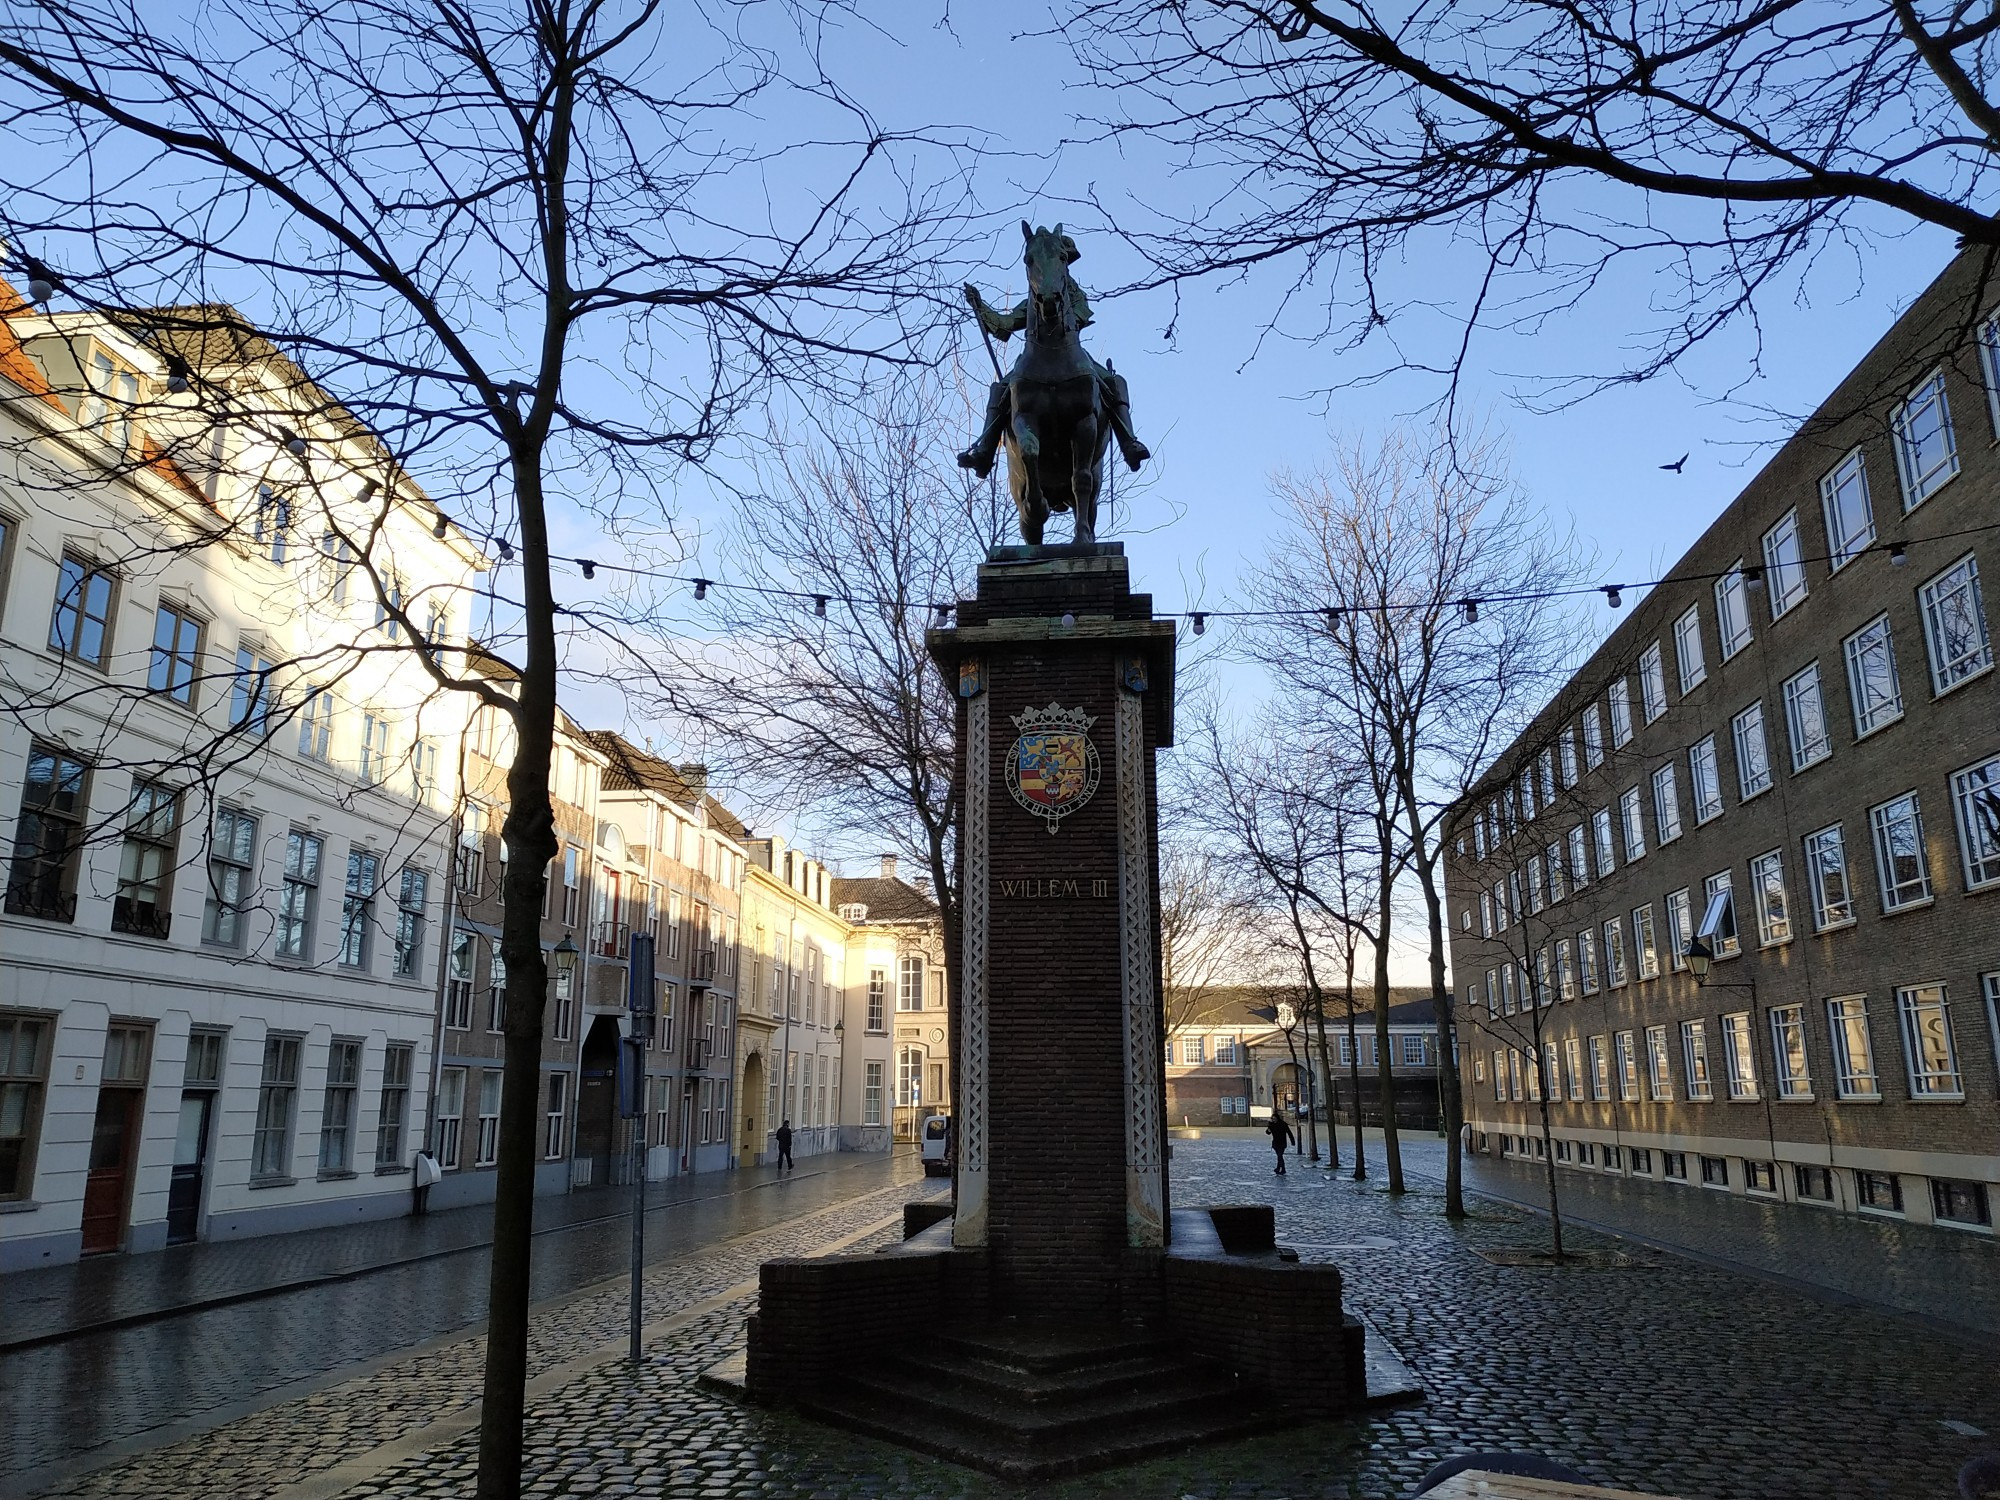 Бреда. Памятник штатгальтеру Виллему III. (18.03.2019)